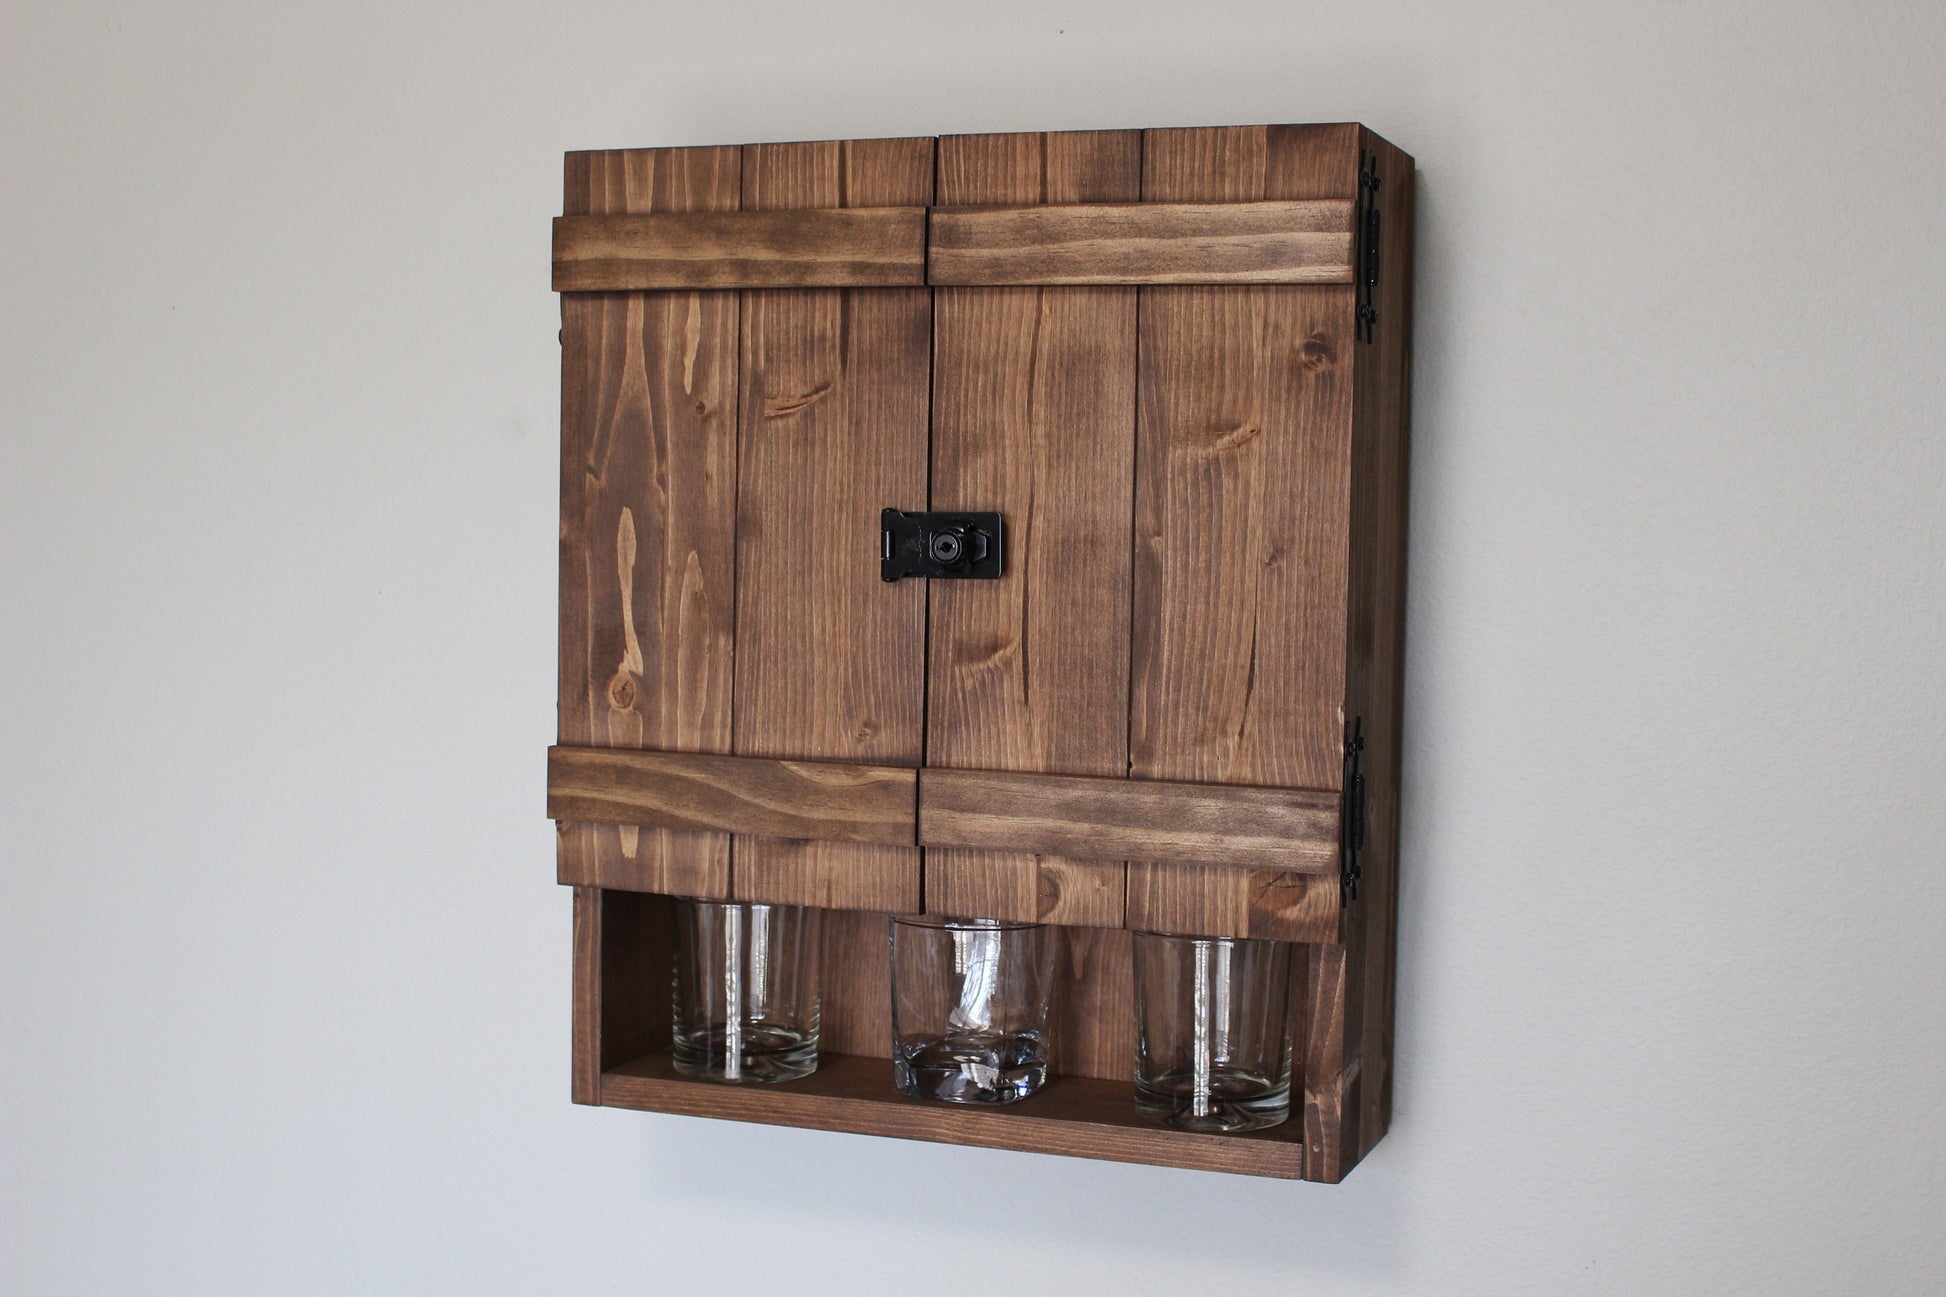 Mini Double Barn Door Wooden Bar Liquor Cabinet With Hasp Lock 